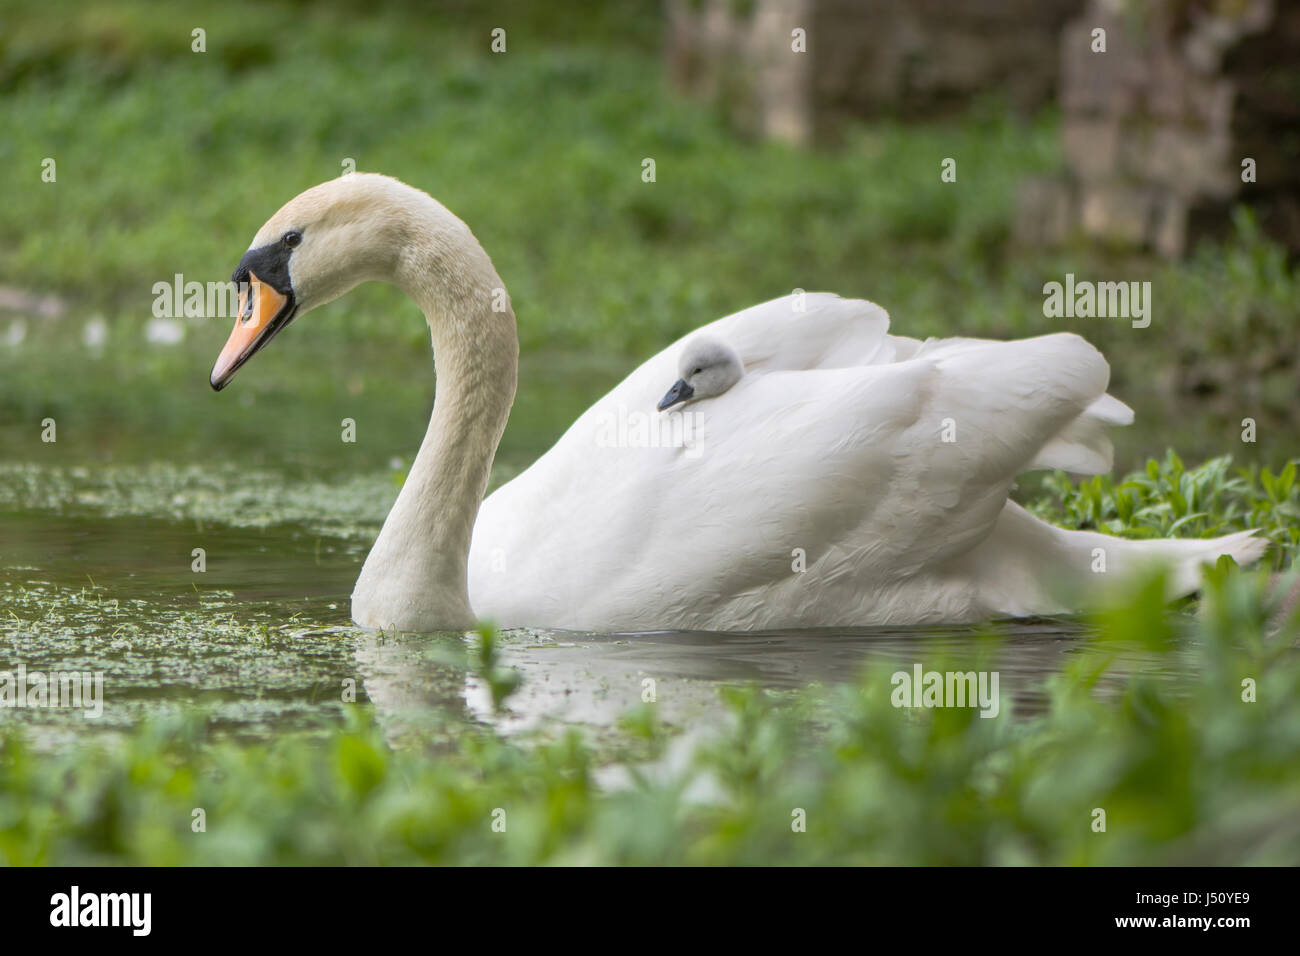 Mute swan (Cygnus olor) cygnet sur une femelle. Jeune poussin niché dans les plumes l'attelage d'une ride sur l'arrière de mère Banque D'Images